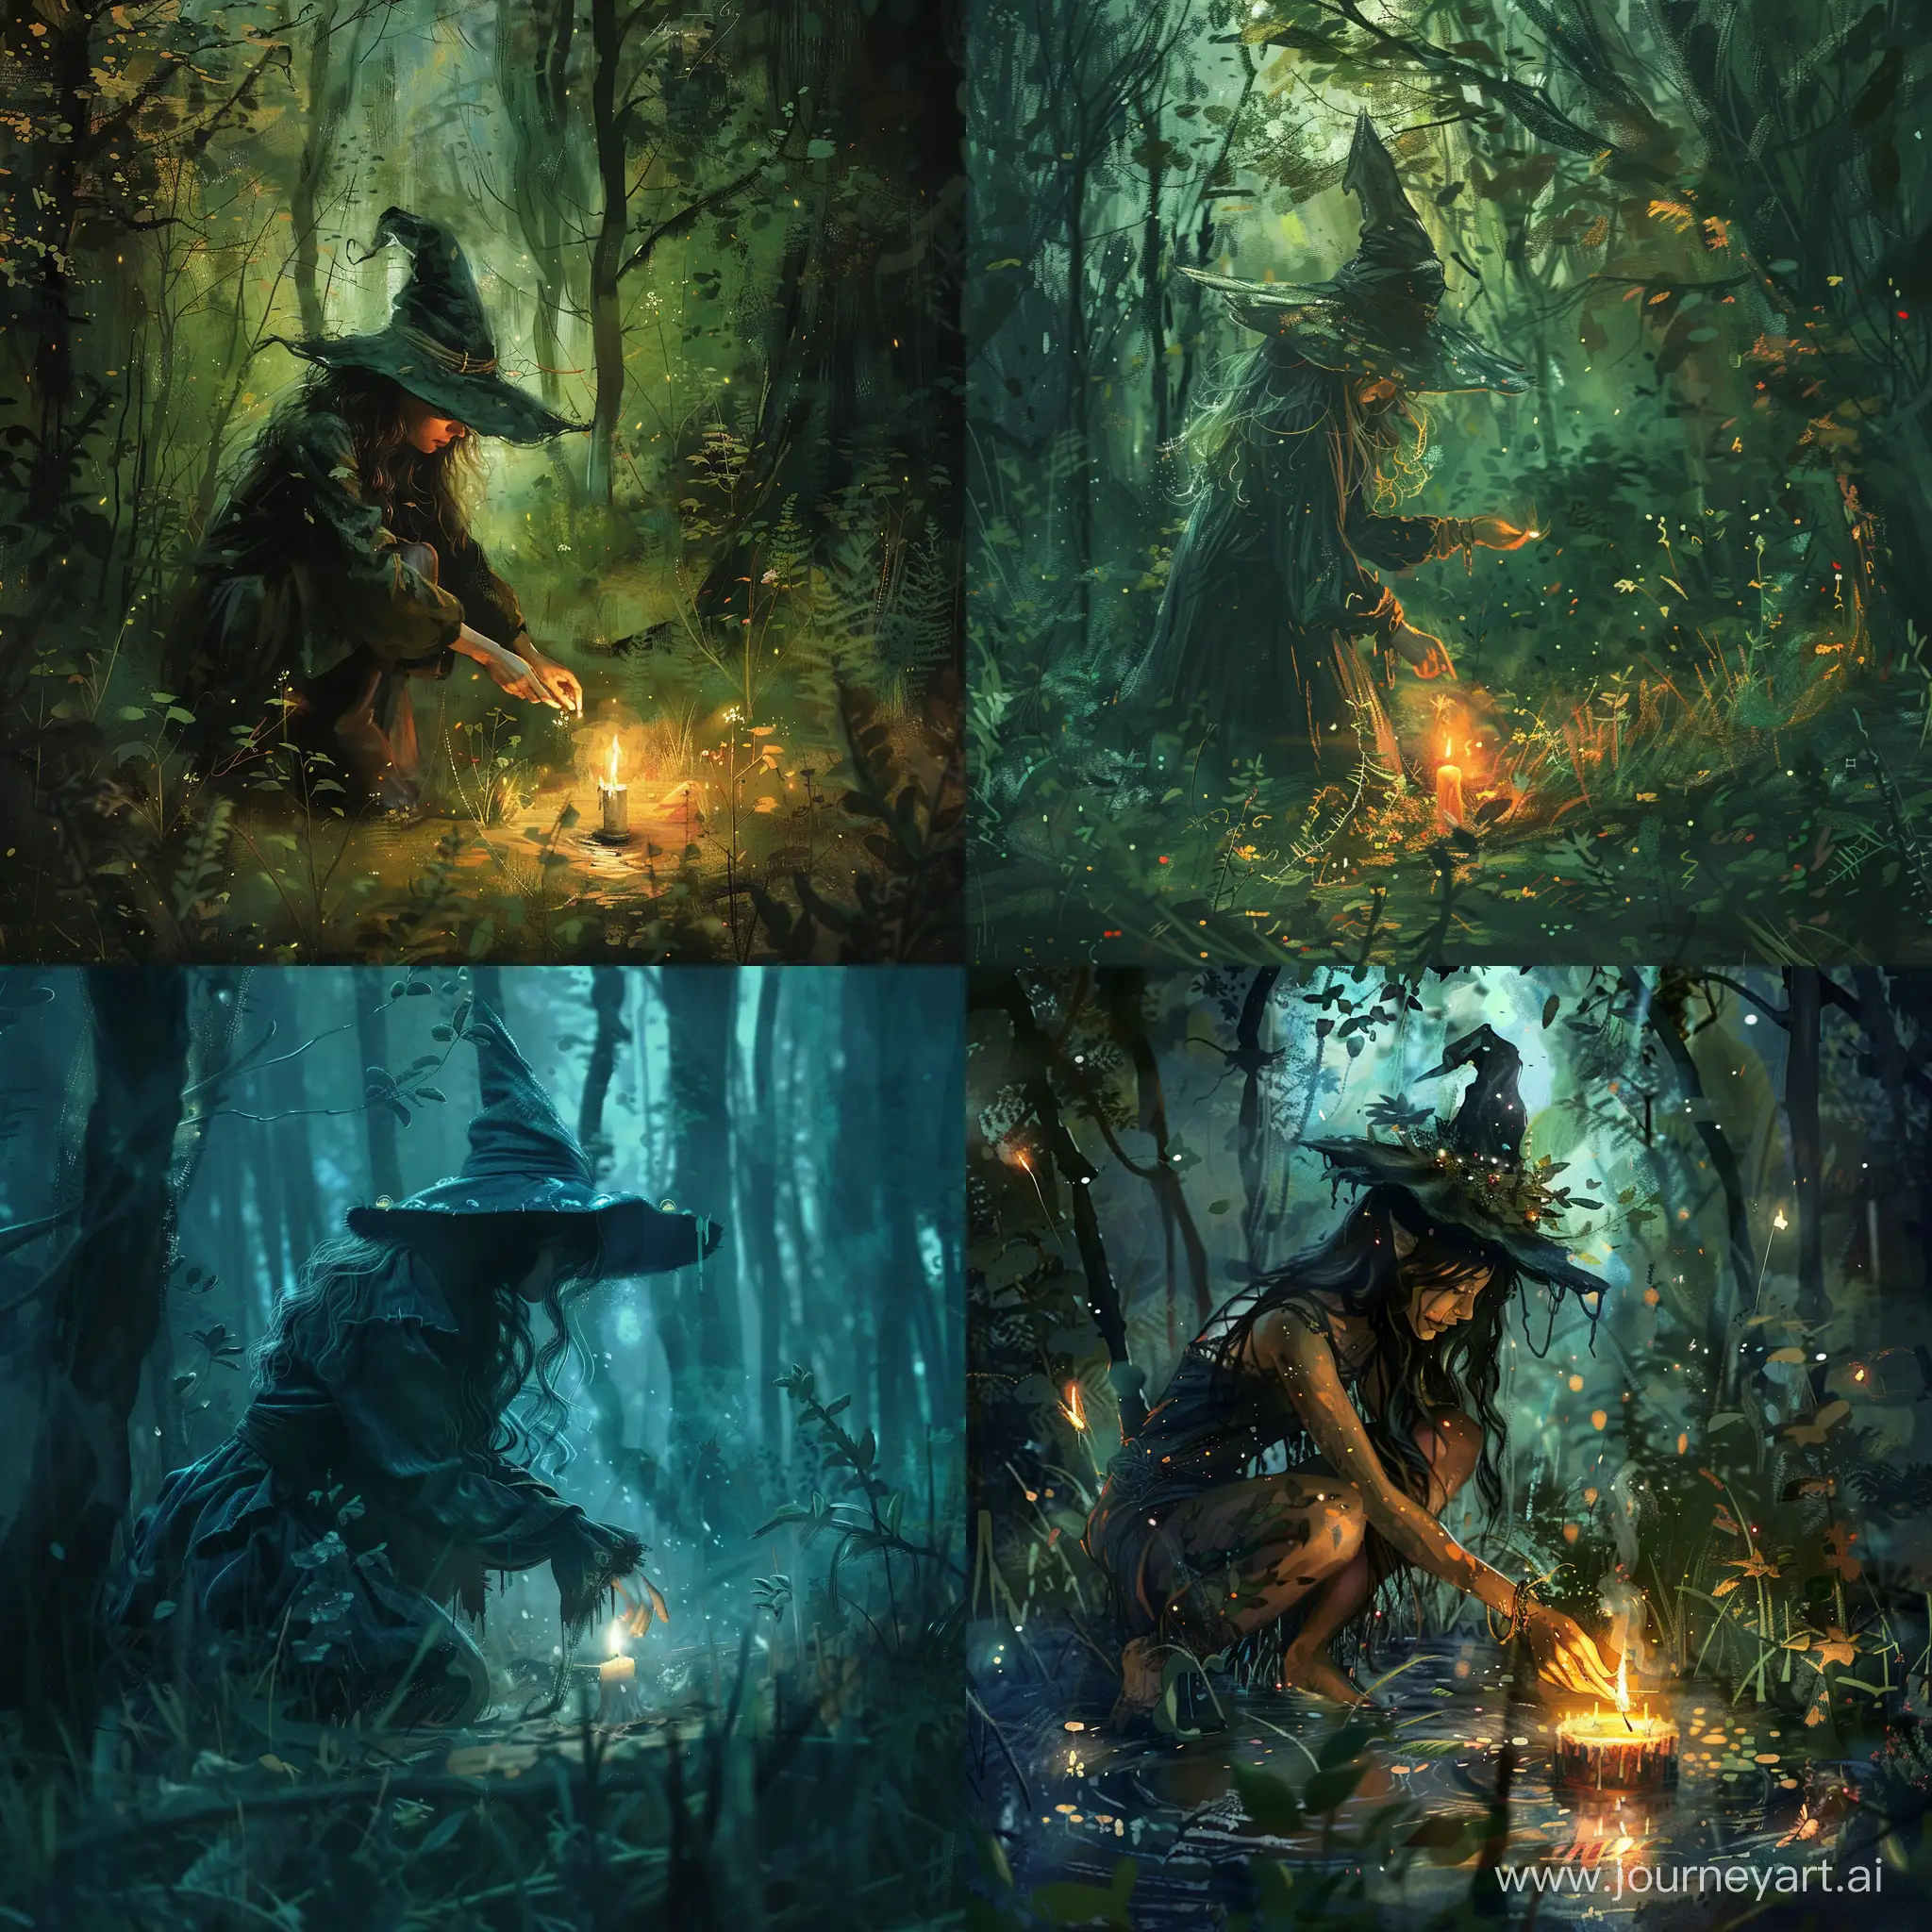 crie uma imagem para mim de uma bruxa, sem chapéu de bruxa, acendendo uma vela em uma floresta